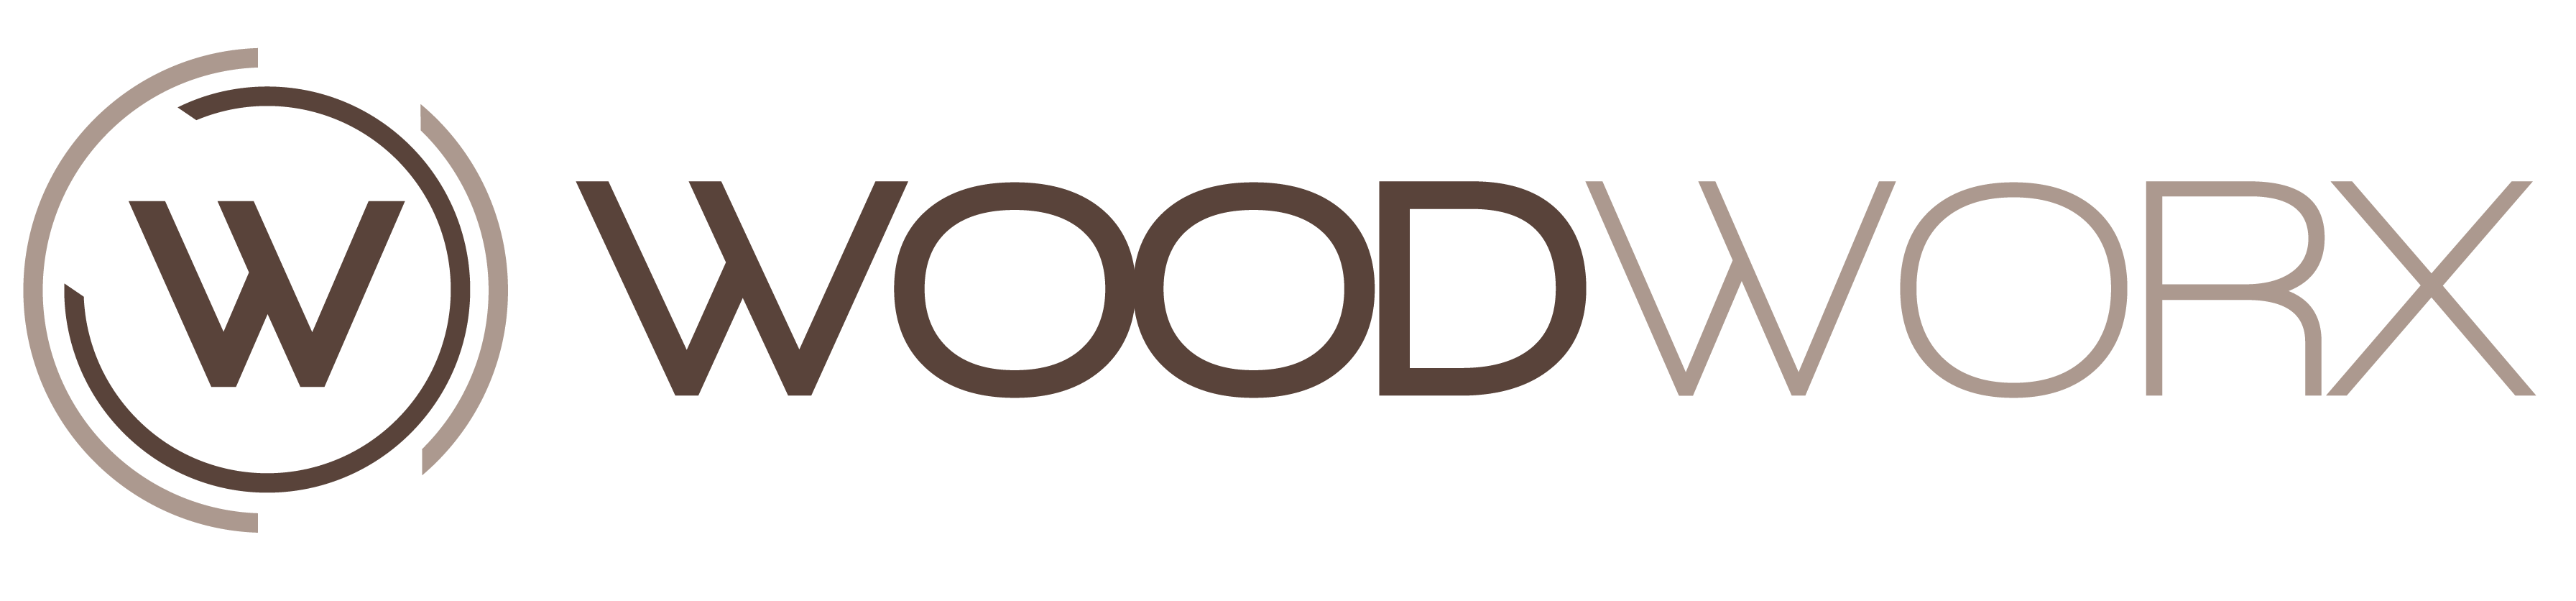 WoodWorx_Primary Logo_2019-01